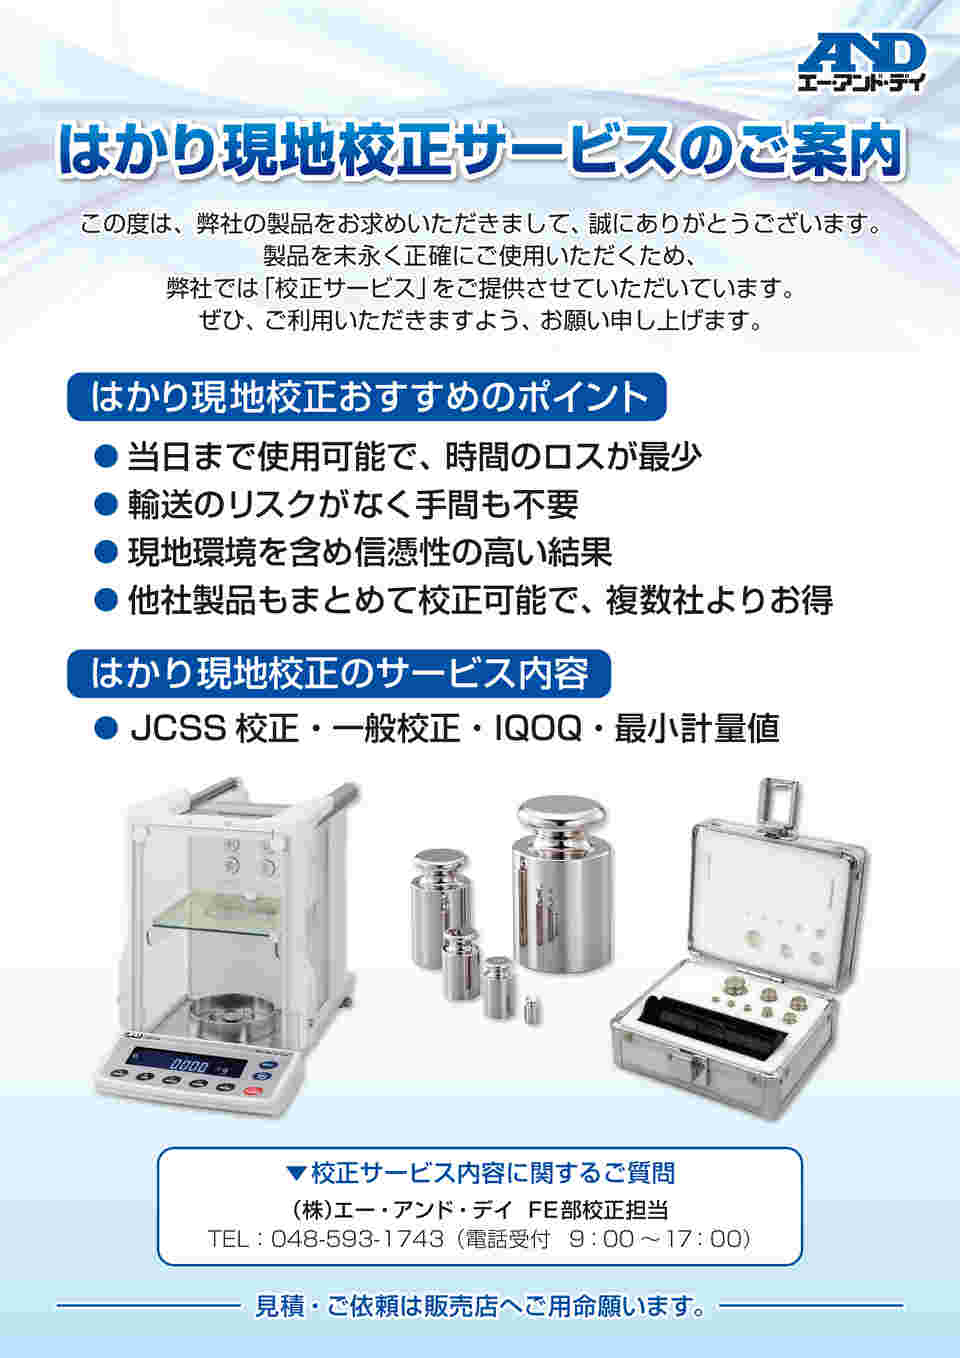 AD (エー・アンド・デイ) 防塵・防水型電子天びん FX-300iWP (標準型) 計測、検査